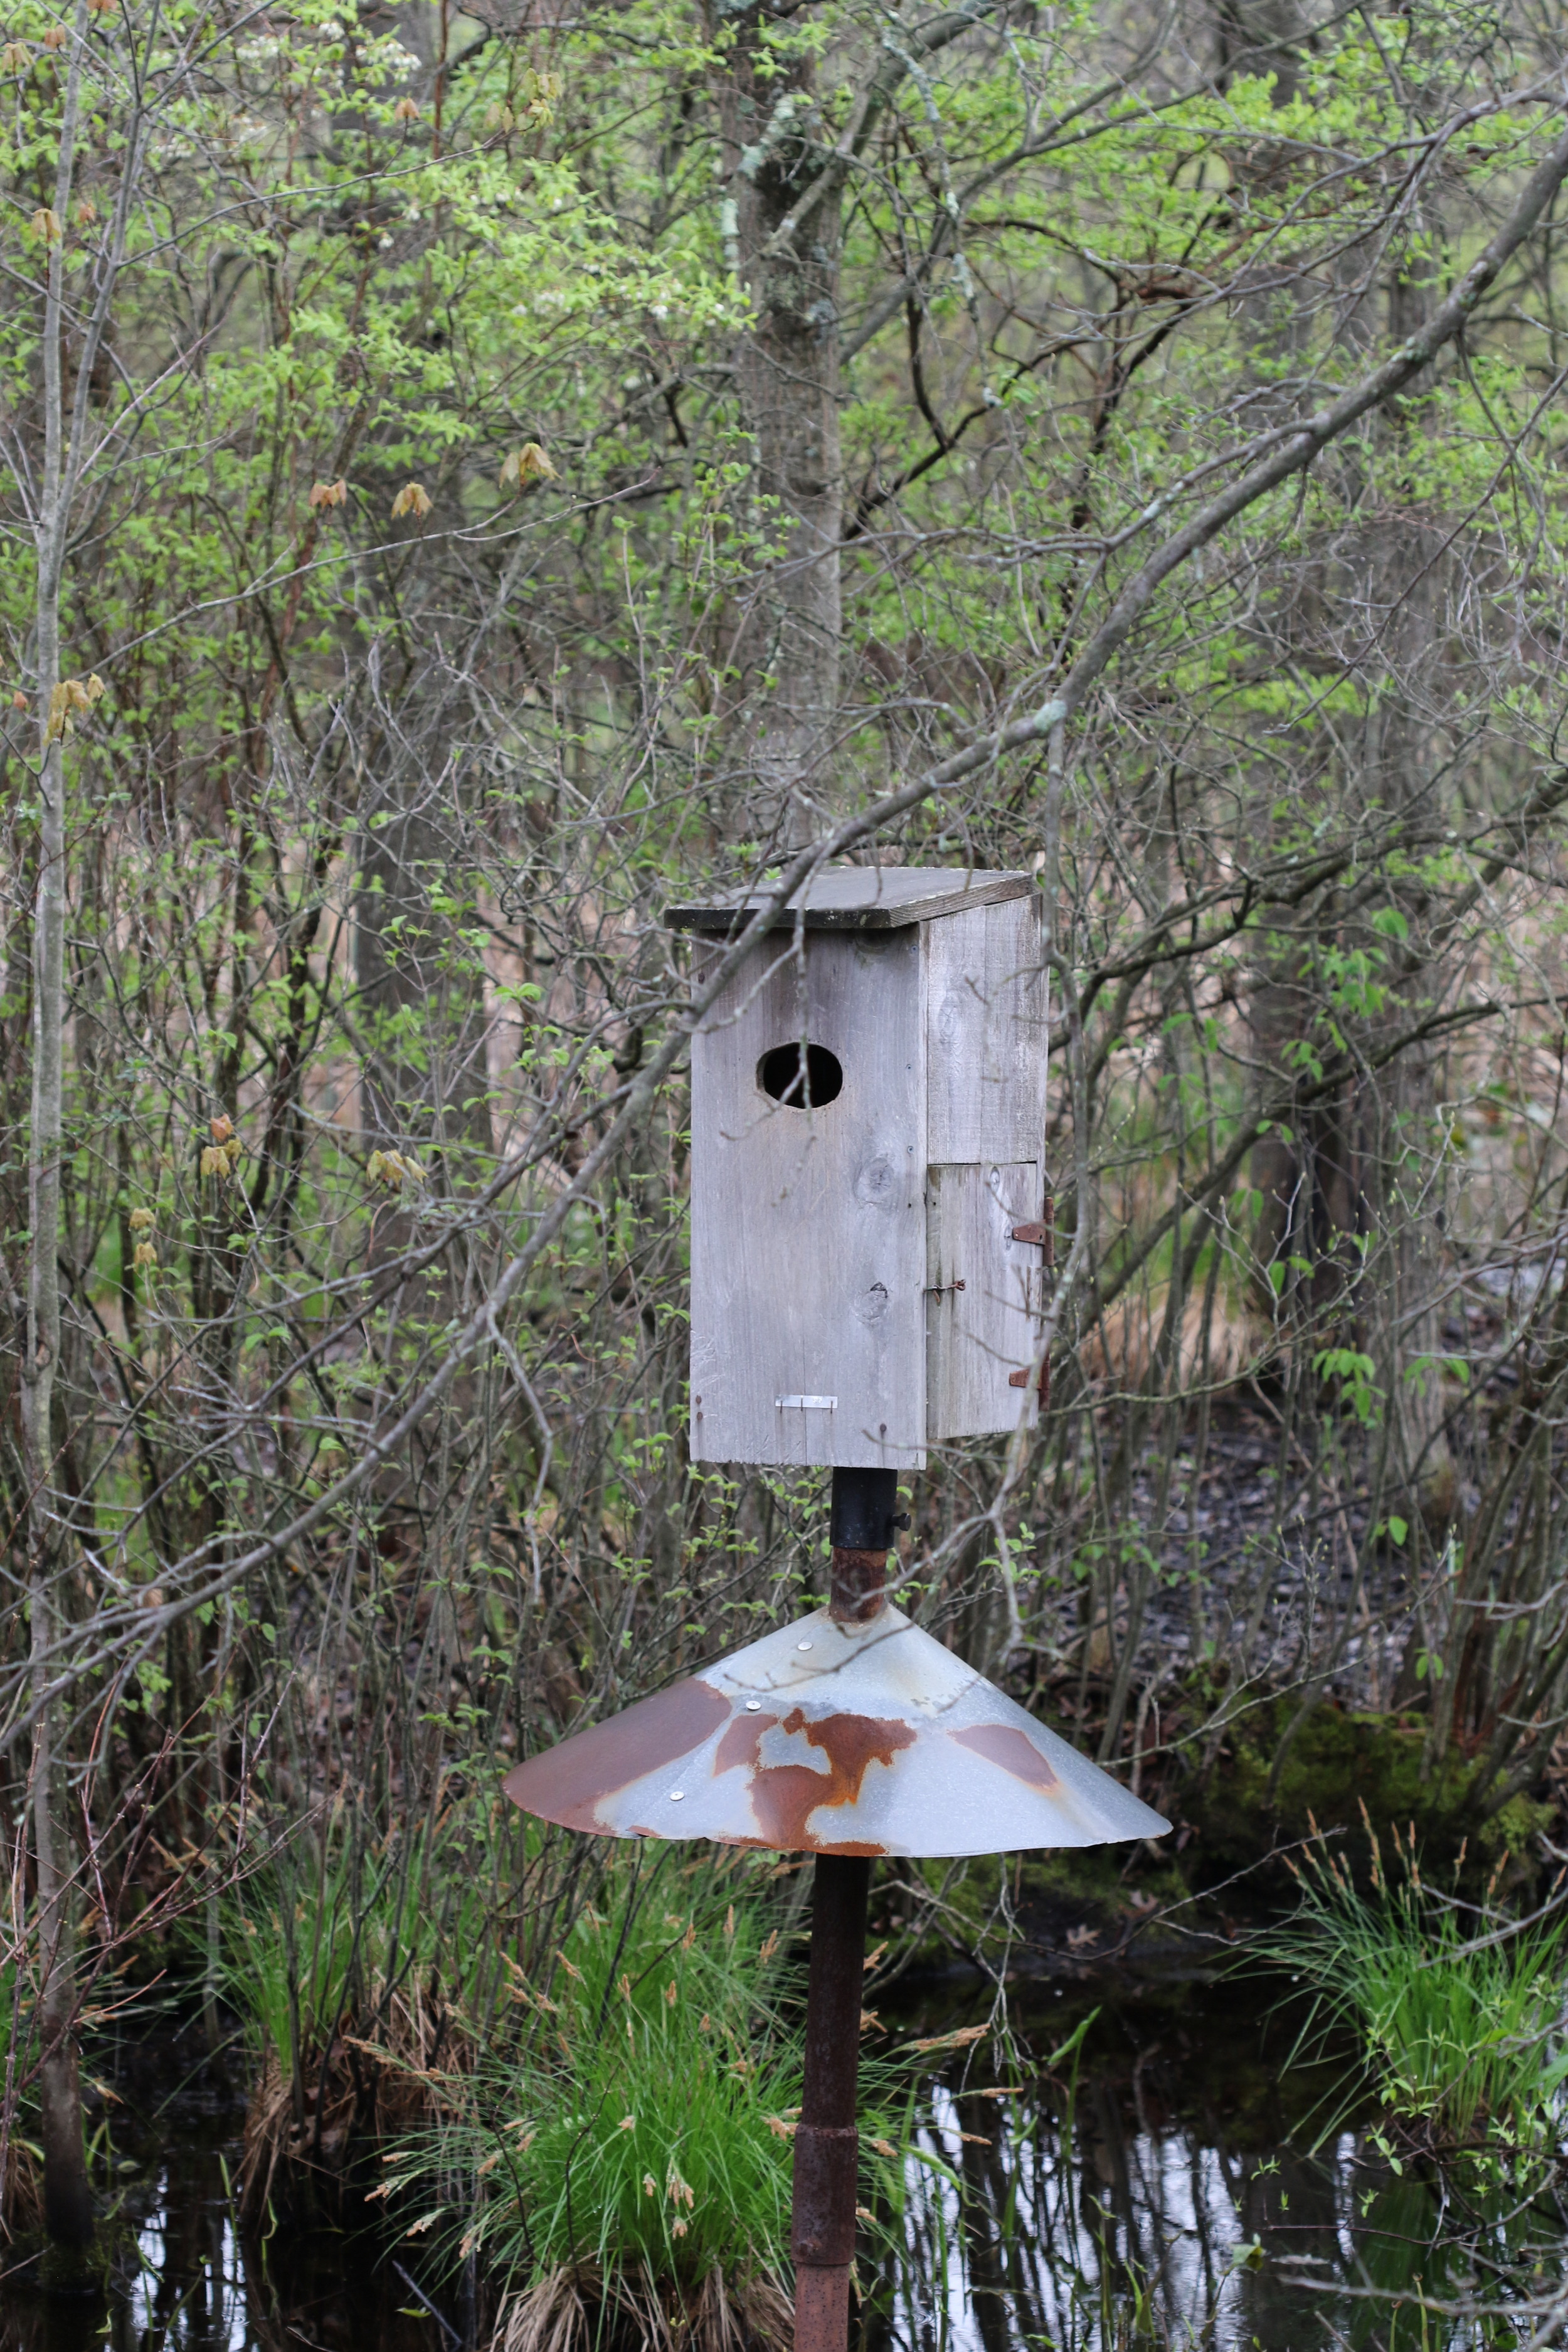 Nest Box for Wood Ducks